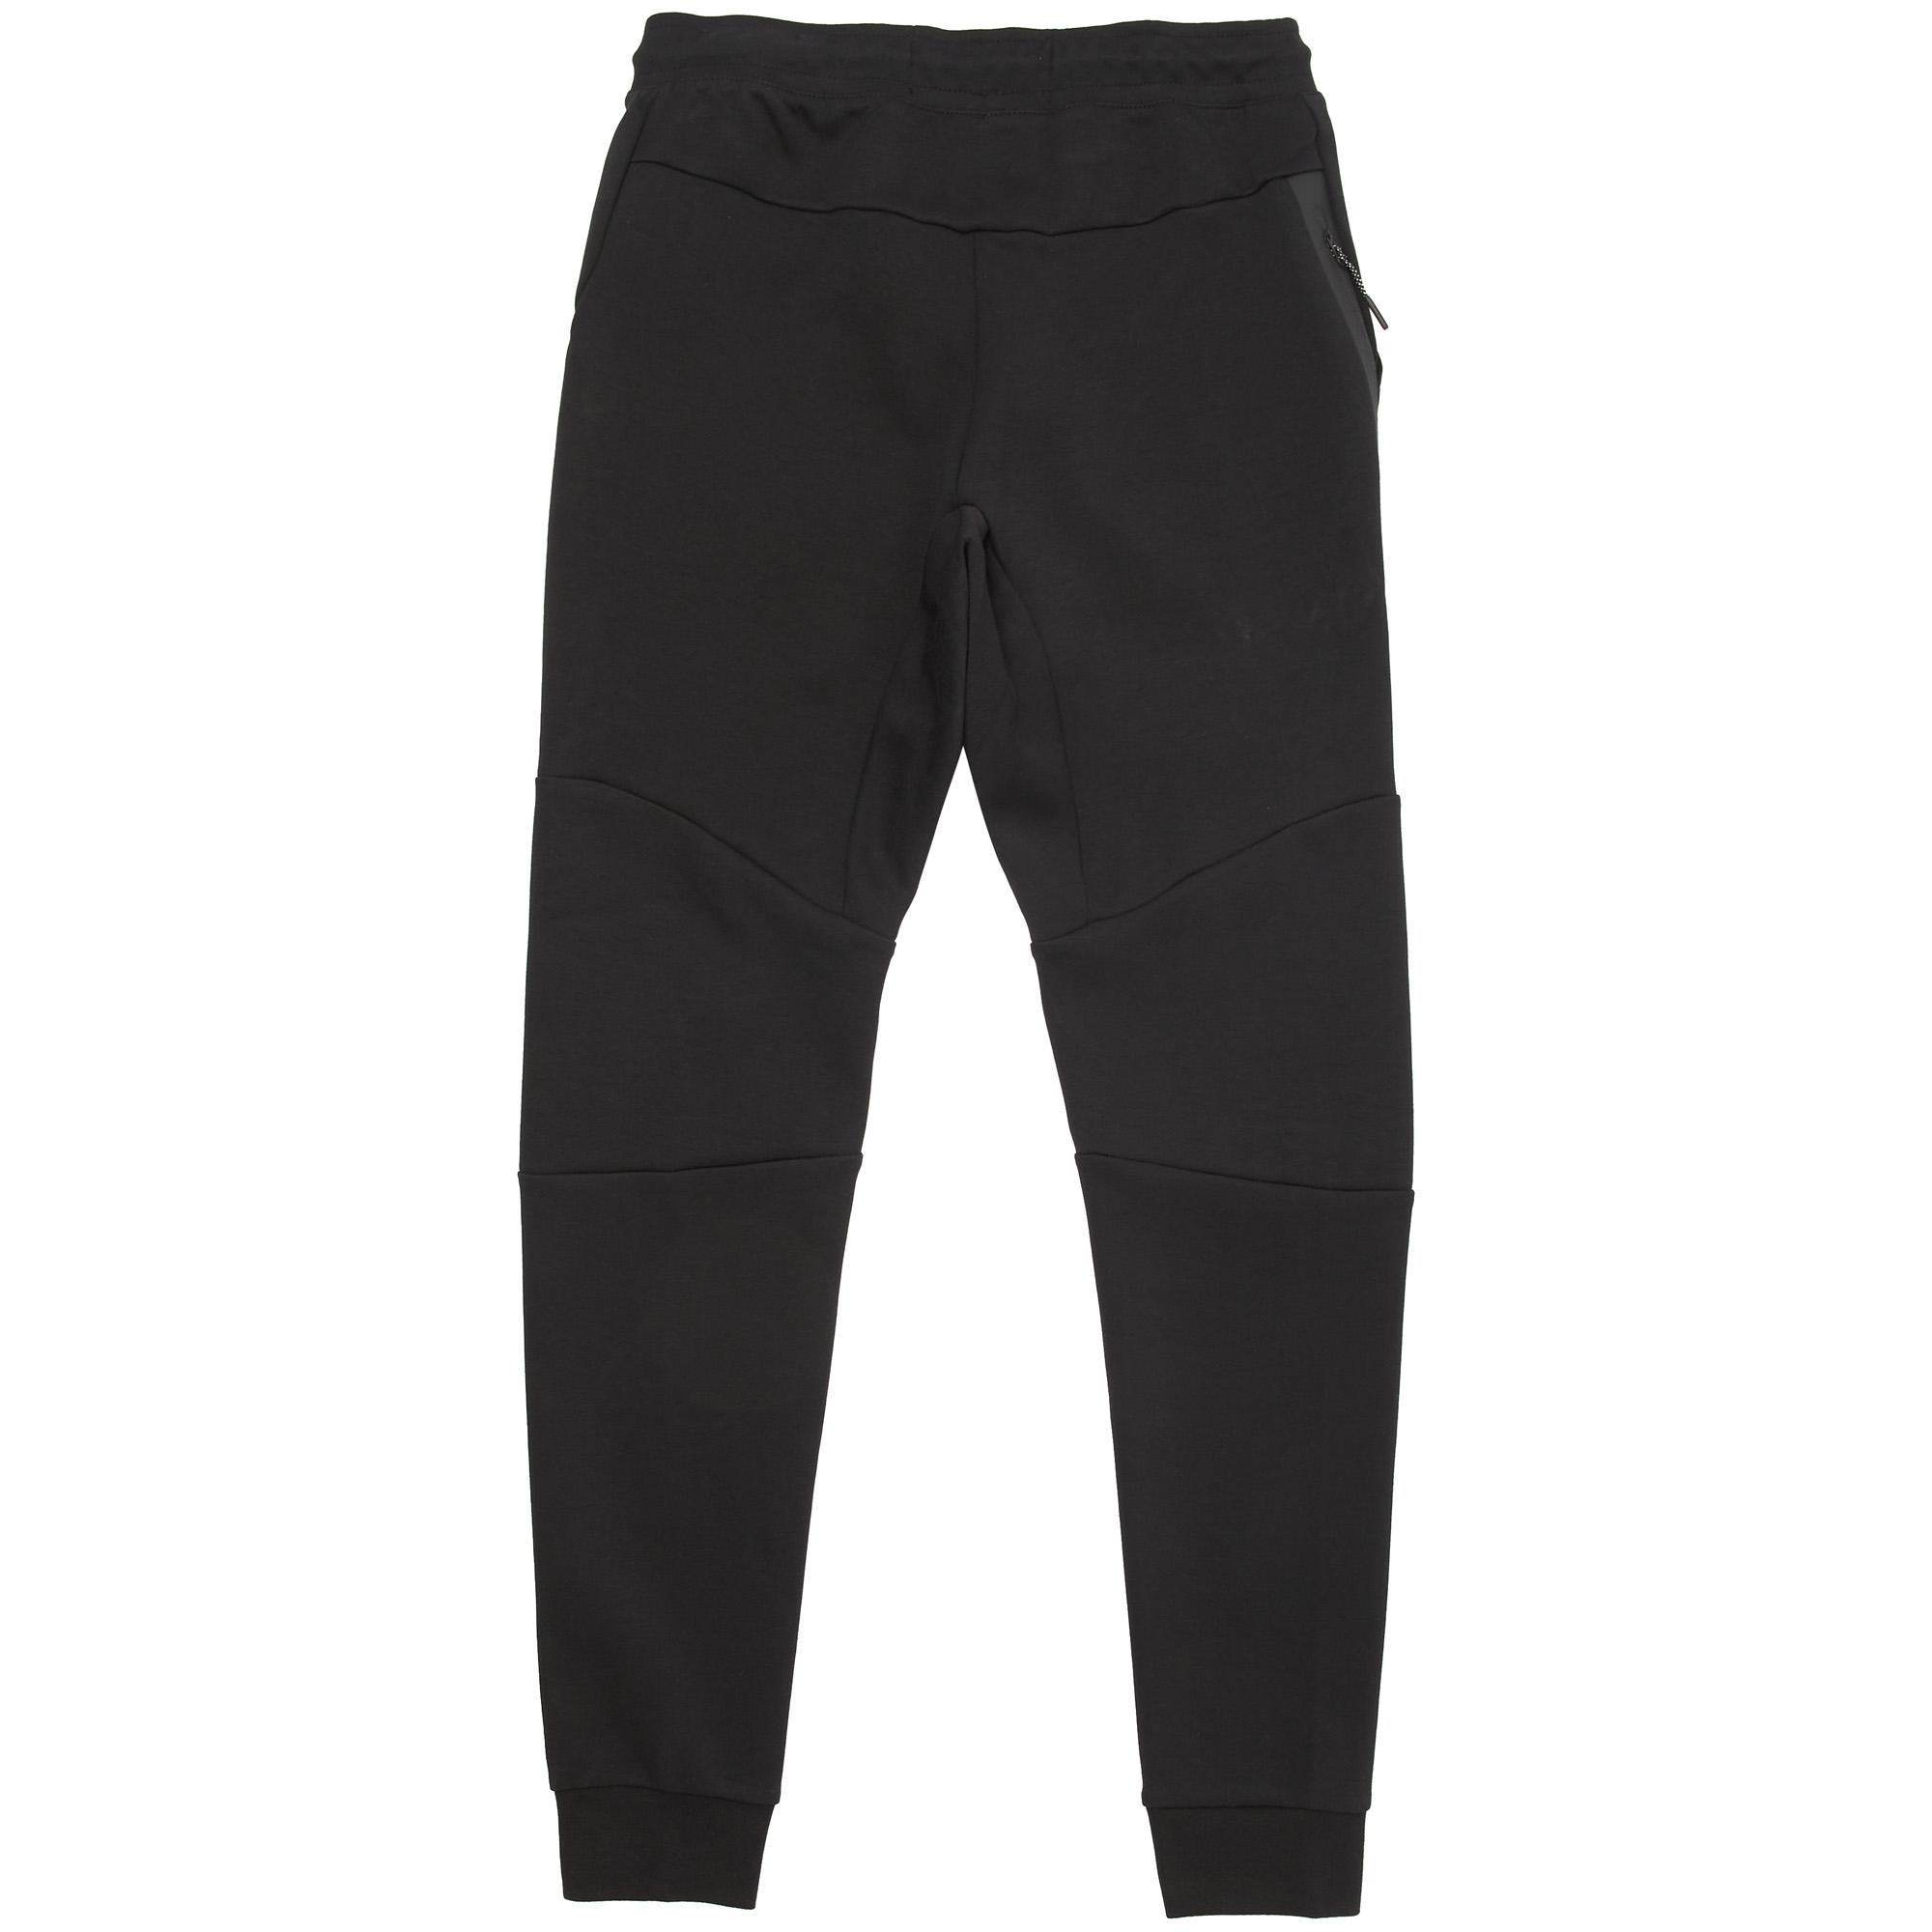 Nike Sportswear Tech Fleece Black Jogger Pants 805162-010 for Men | Lyst UK